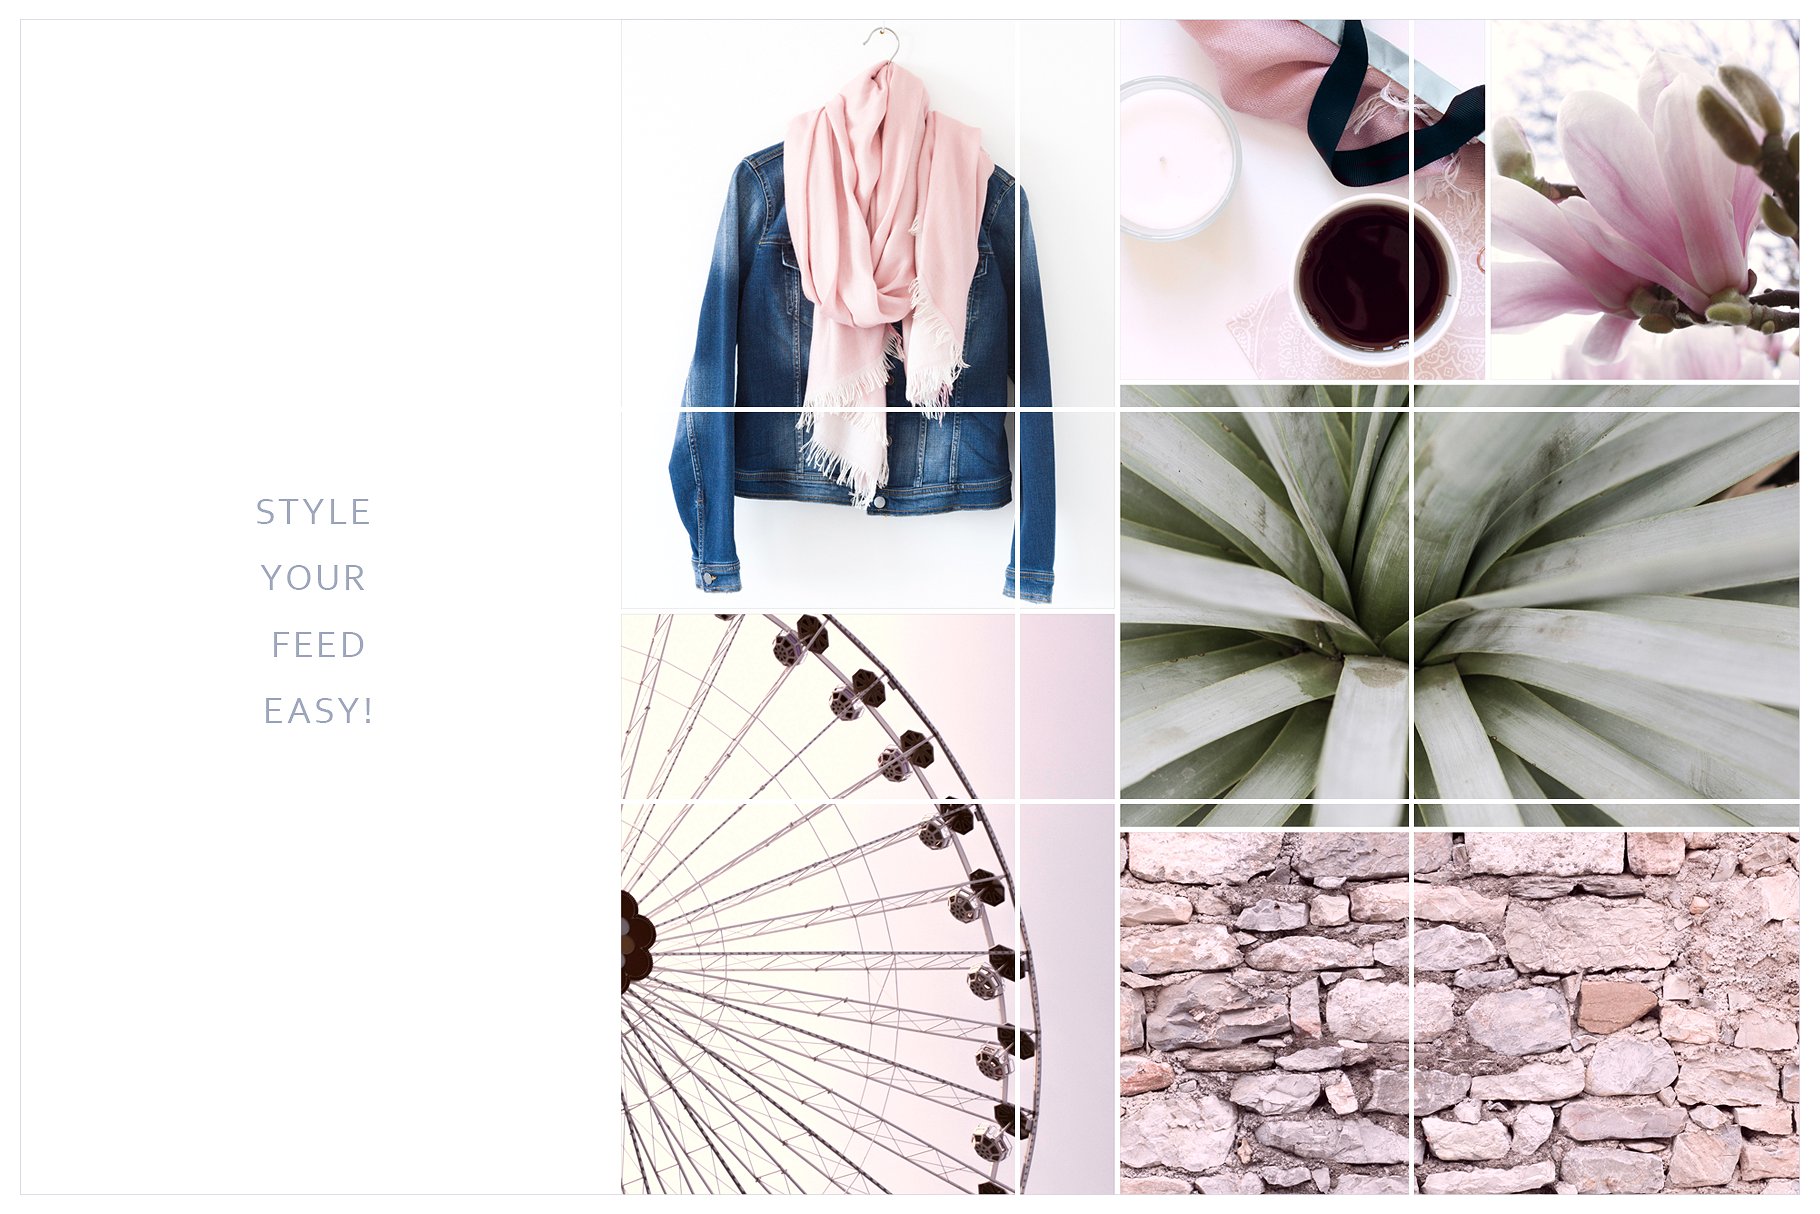 Instagram标题贴图设计素材包 Instagram Tiles Bundle #3插图(2)